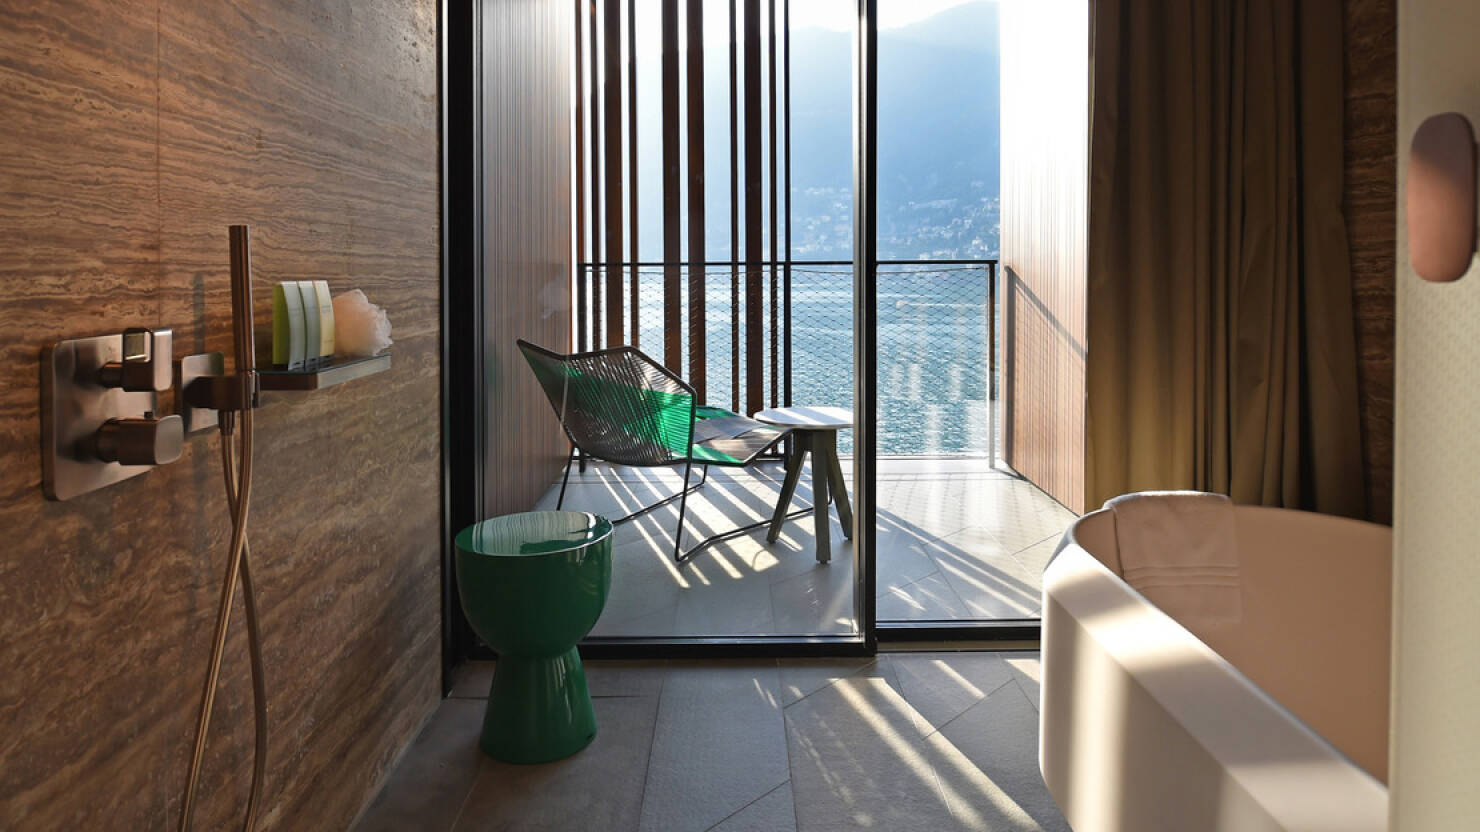 patricia urquiola designs luxury 'il sereno' hotel on lake como